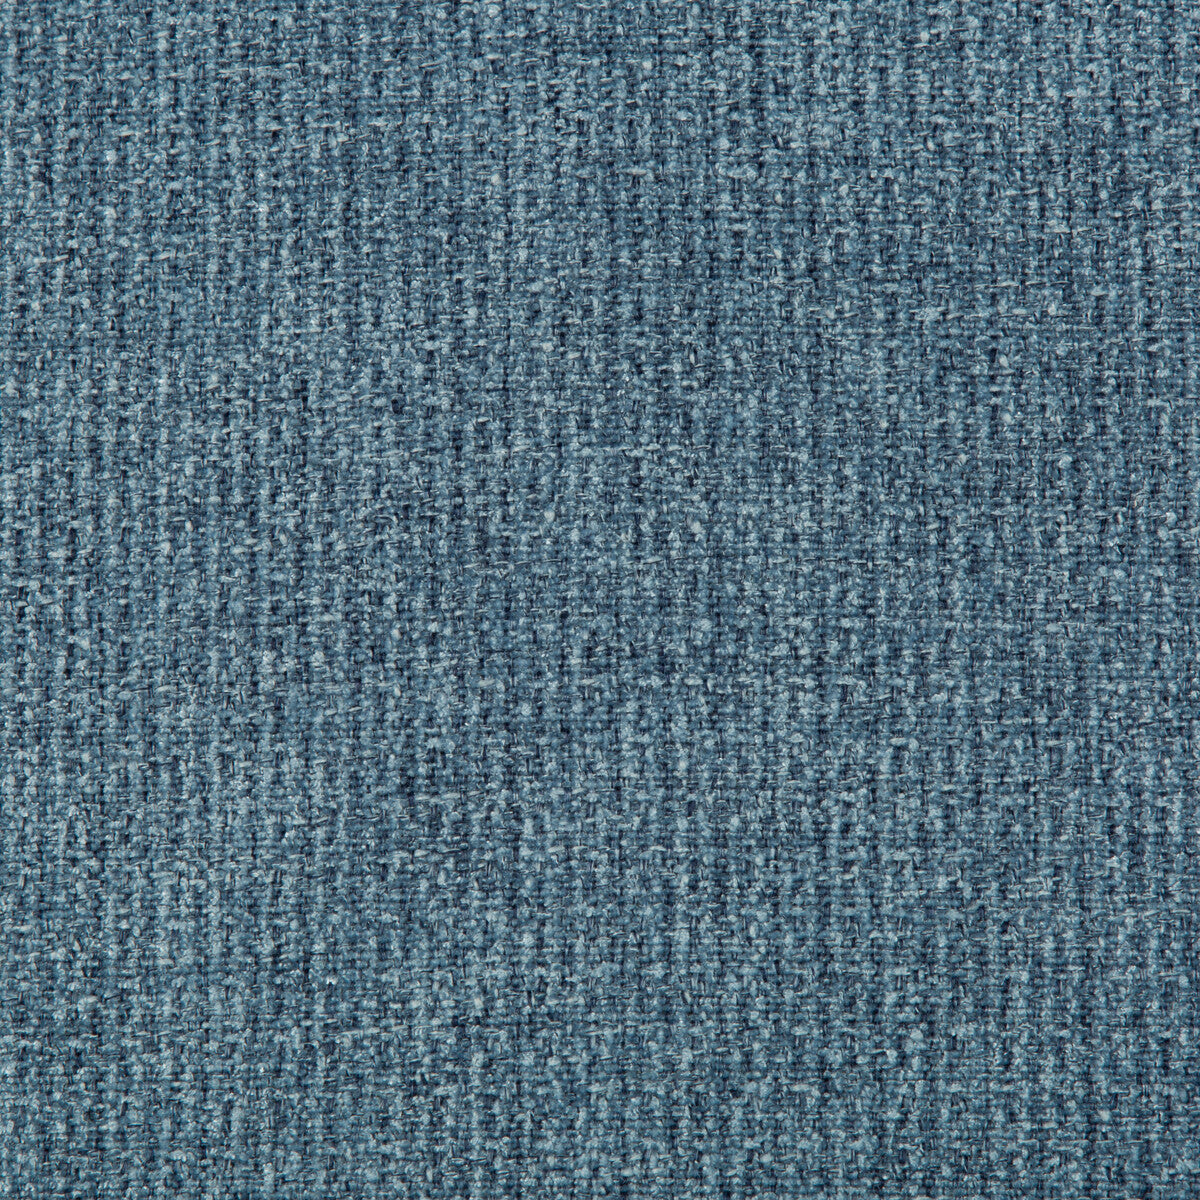 Kravet Basics fabric in 35290-5 color - pattern 35290.5.0 - by Kravet Basics